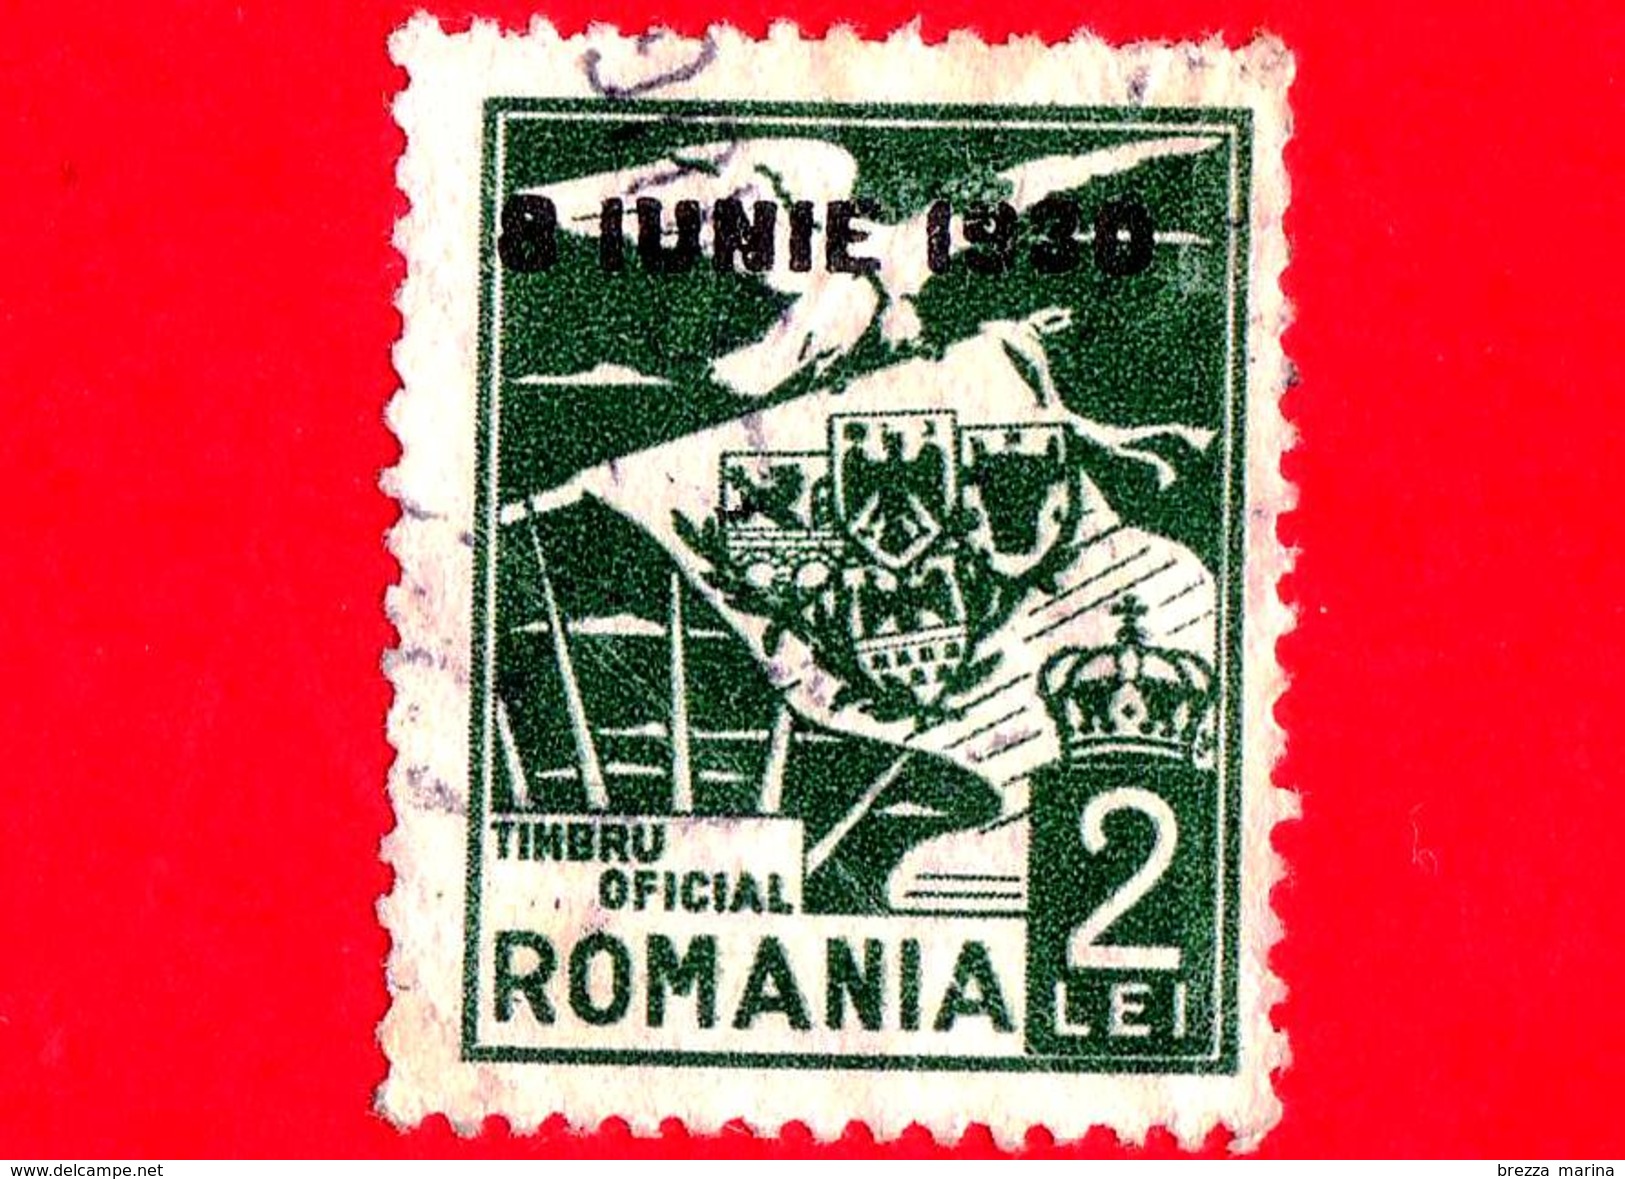 ROMANIA - Usato - 1930 - Servizio - Aquila - Stemma - Coats Of Arms - 2 - Oficiales